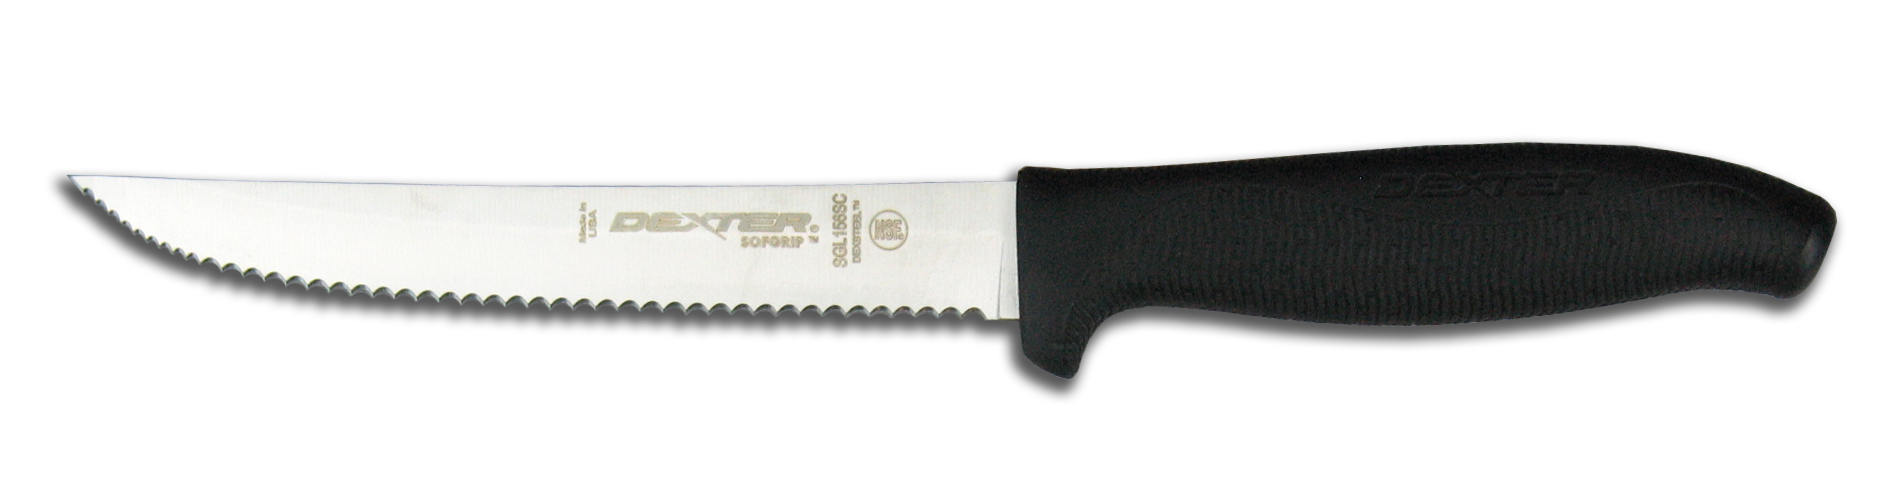 fork clipart steak knife